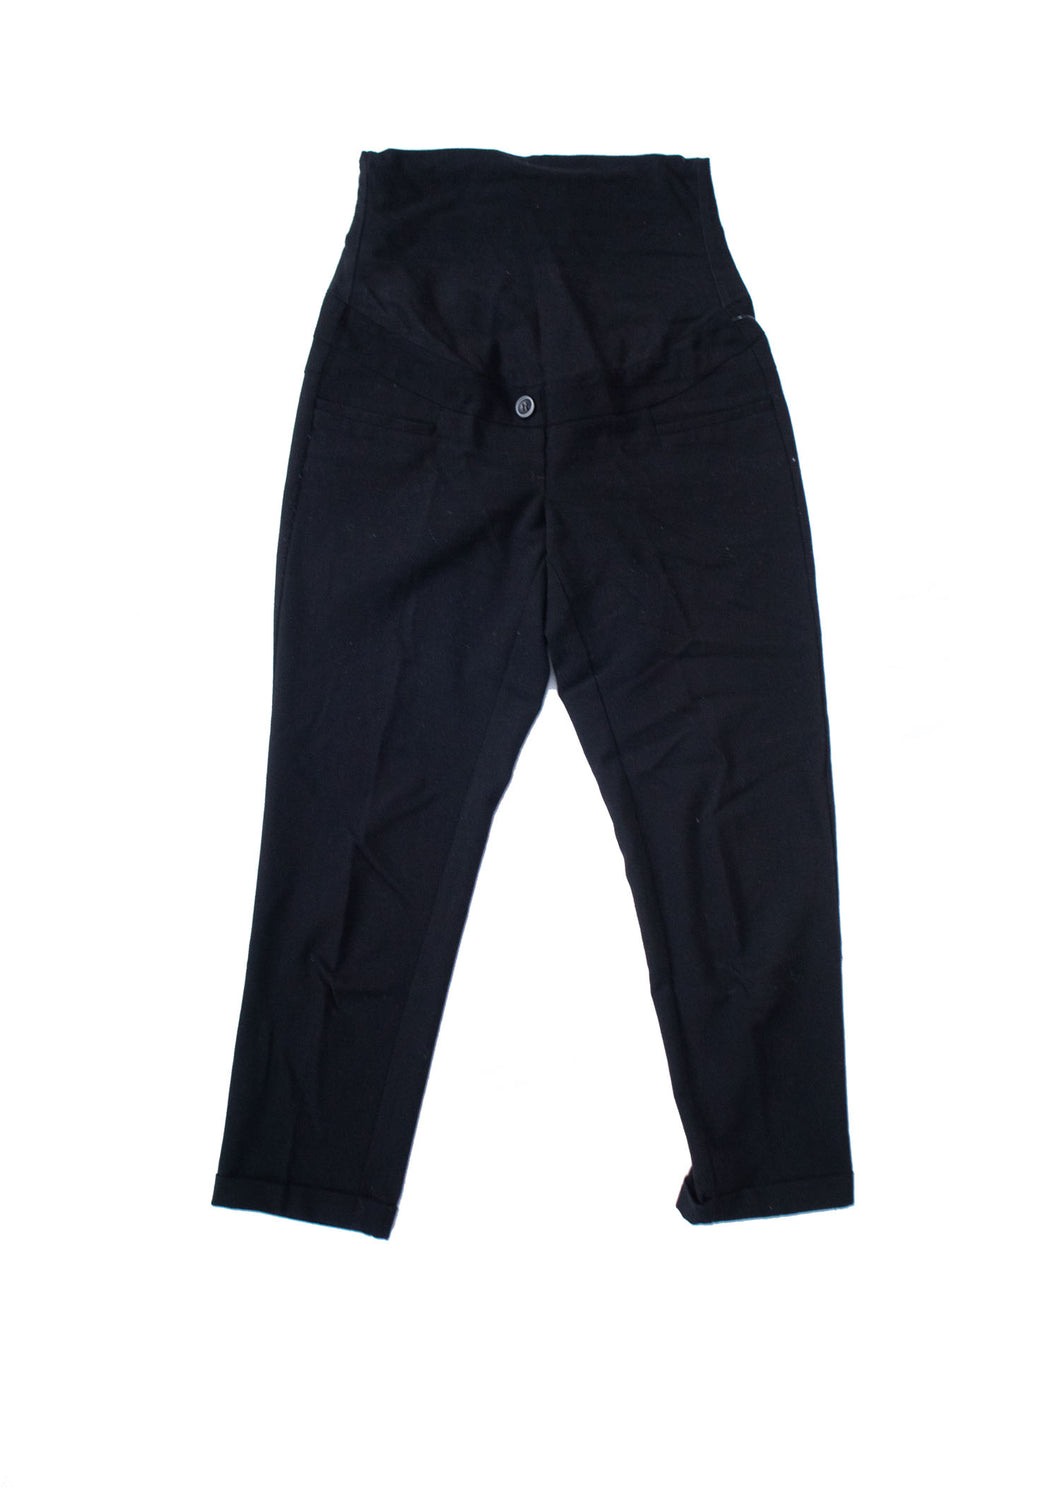 XS Thyme Maternité Noir Robe Pantalon Crops 25